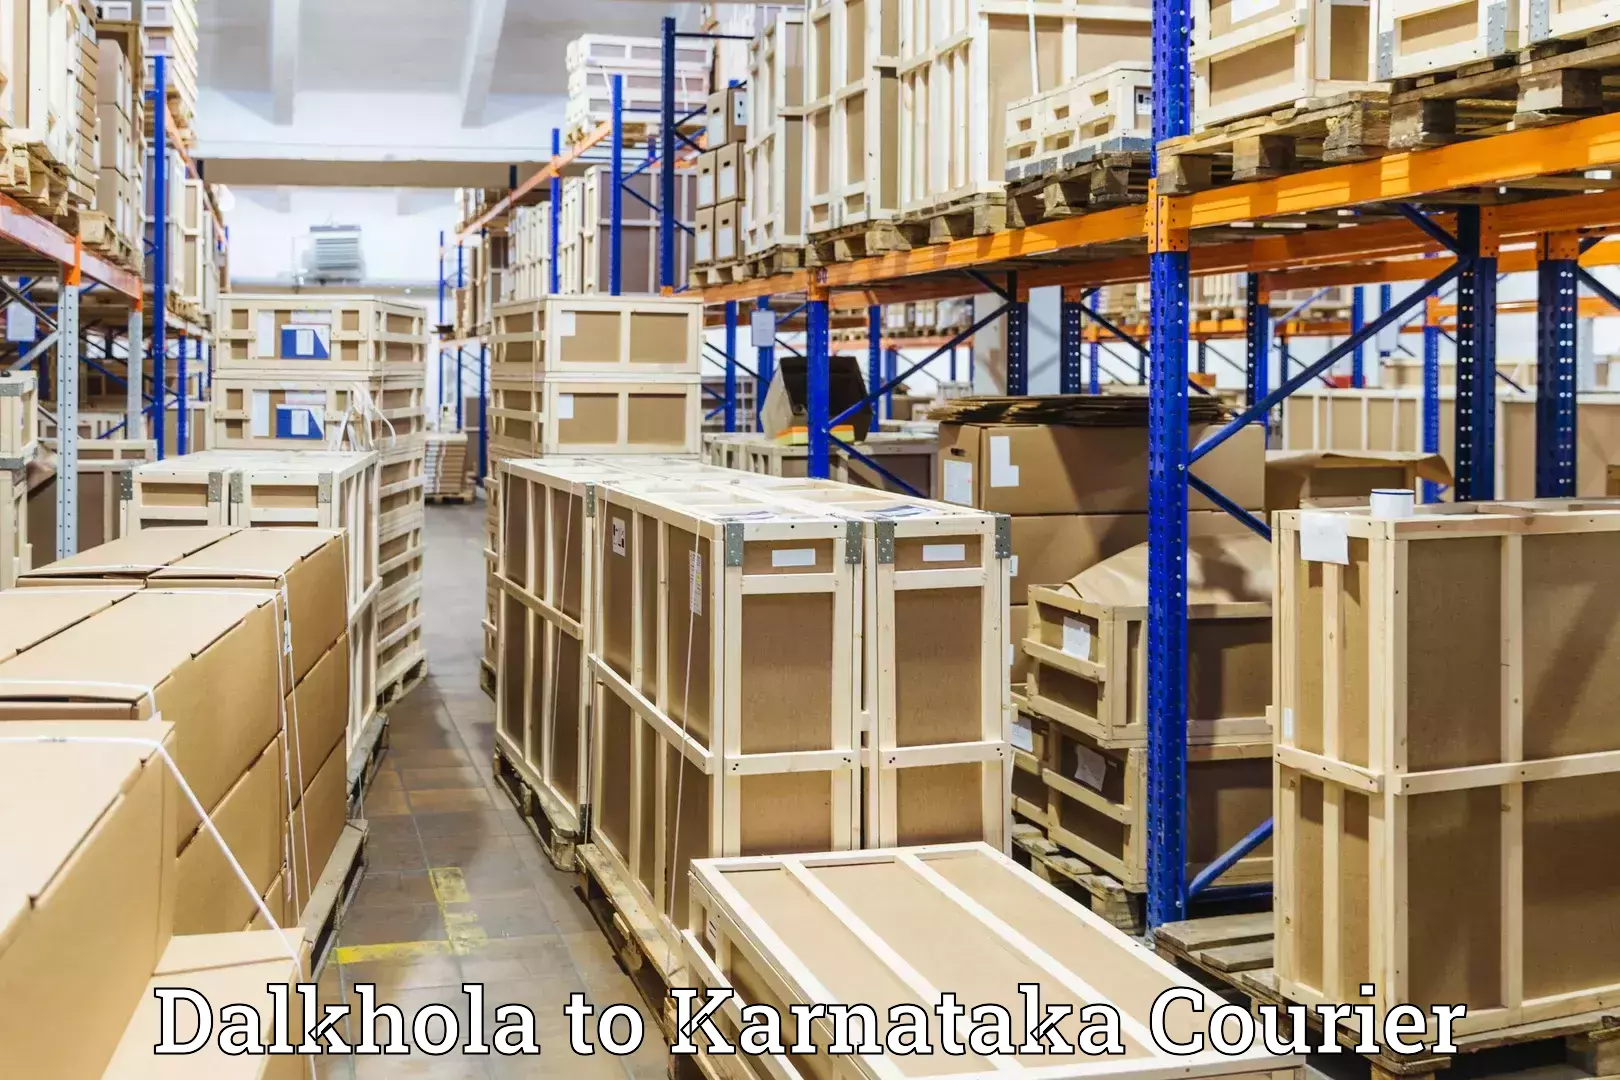 Luggage shipment processing Dalkhola to Karnataka